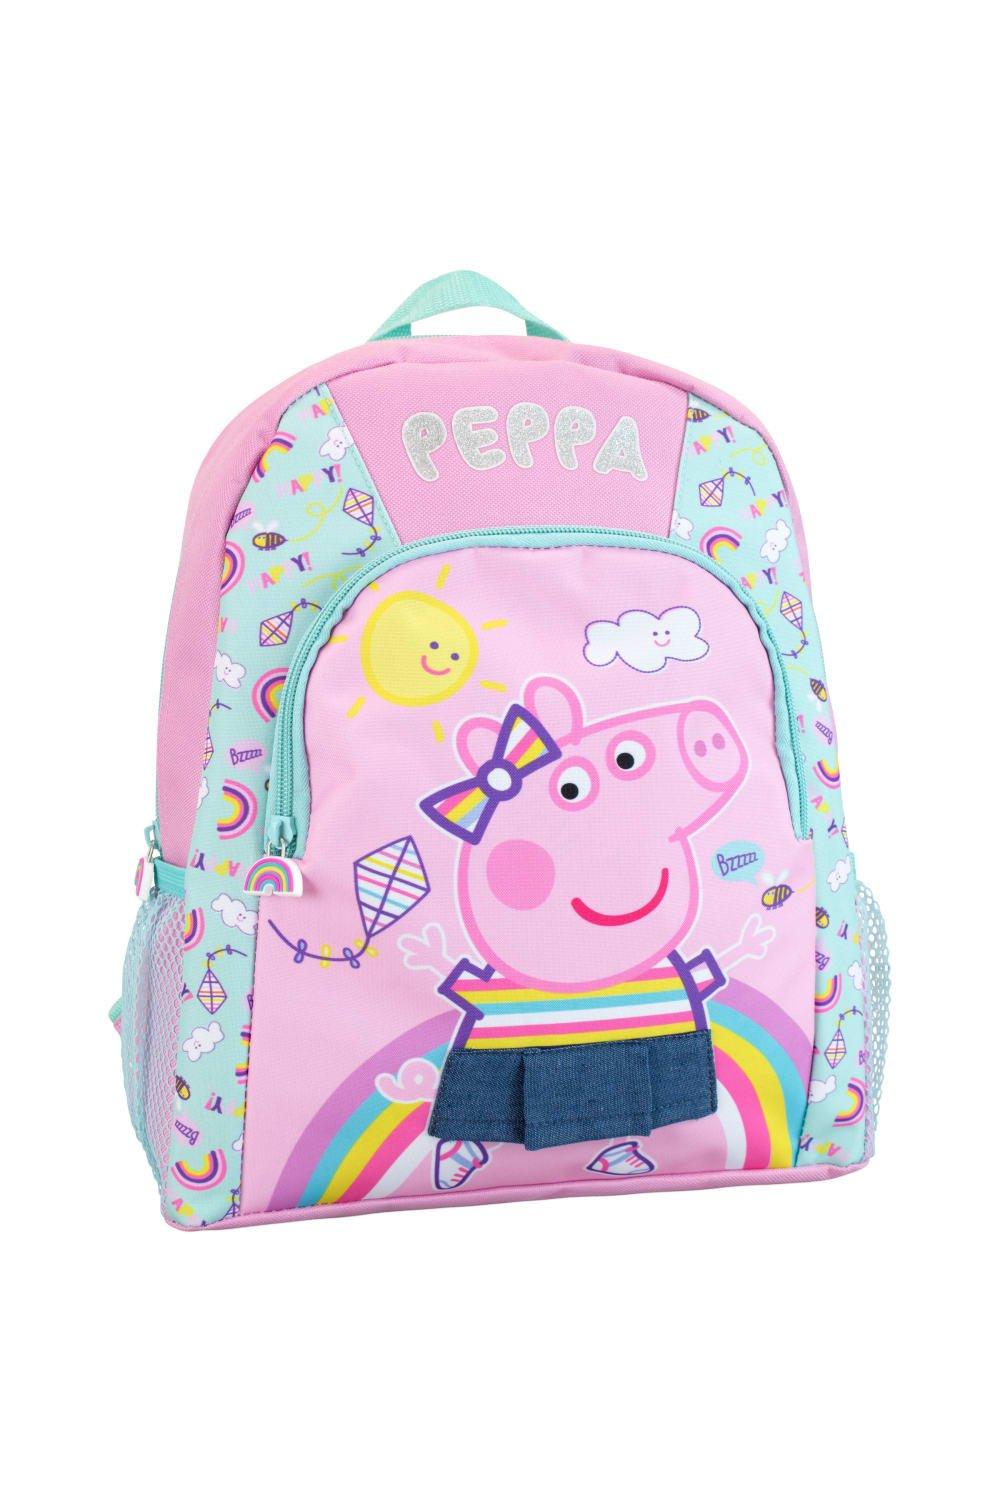 Детский рюкзак Peppa Pig, розовый макаронные изделия melissa свинка пеппа 500 г